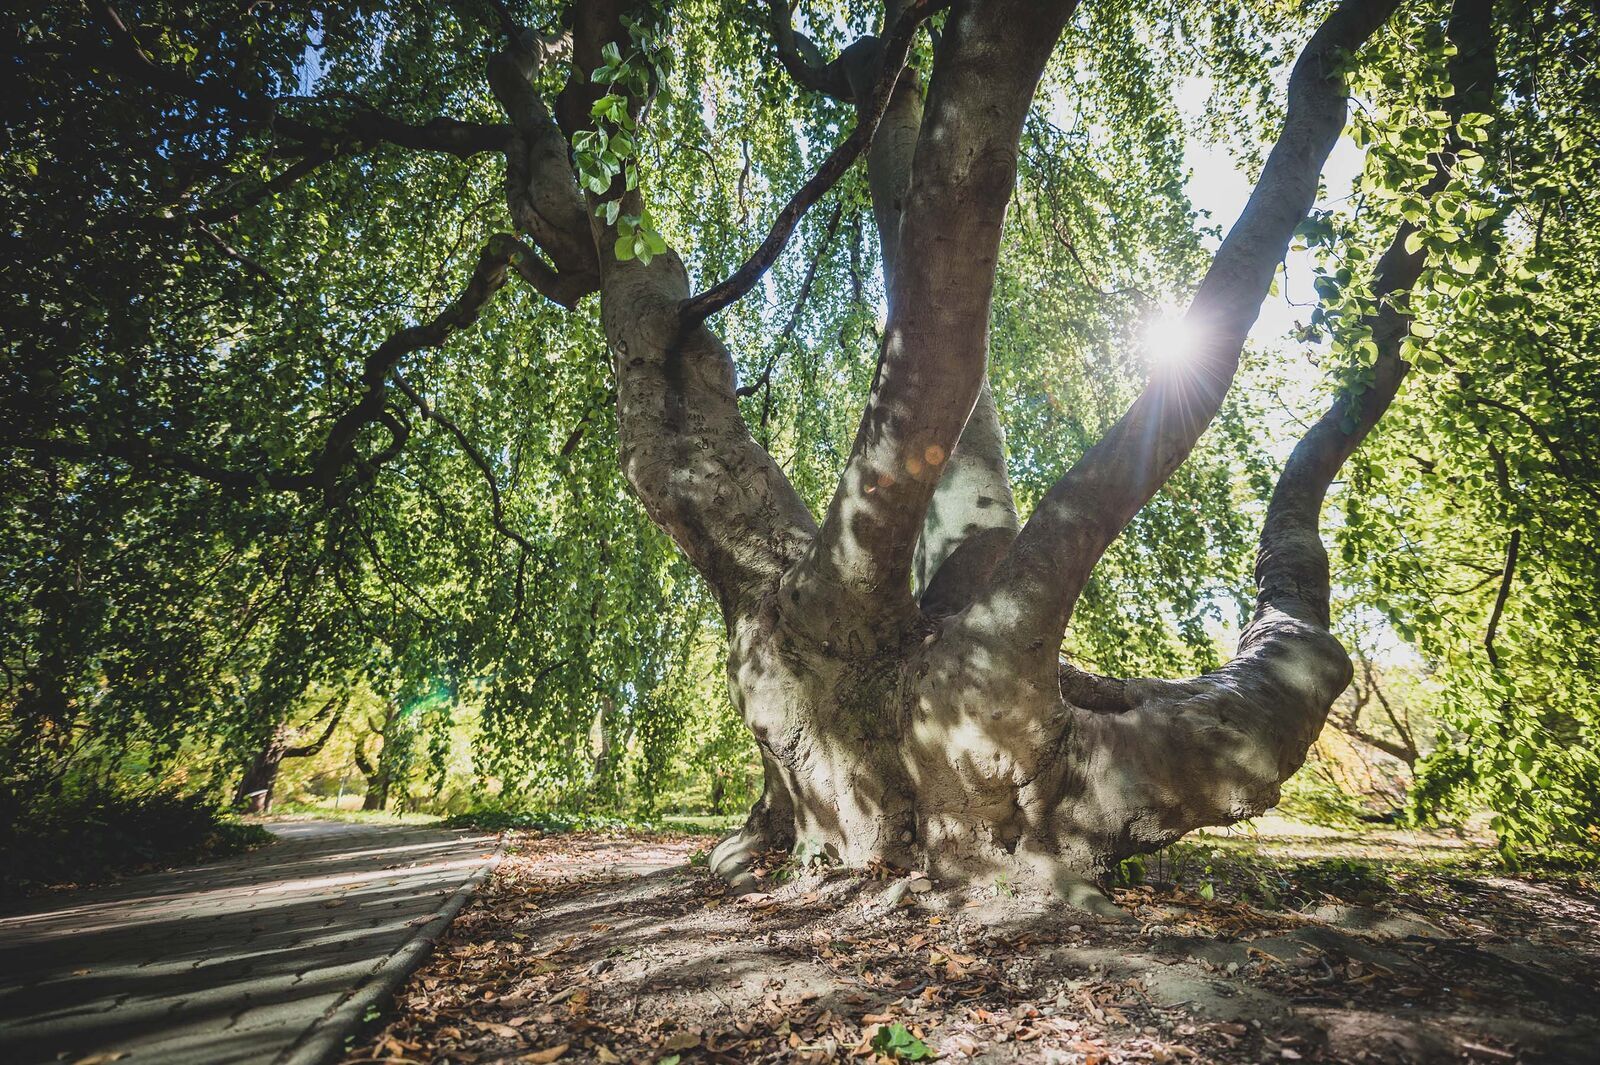 Adatbázis és állapot felmérés készül a történeti és botanikus kertekben élő matuzsálem korú fákról  